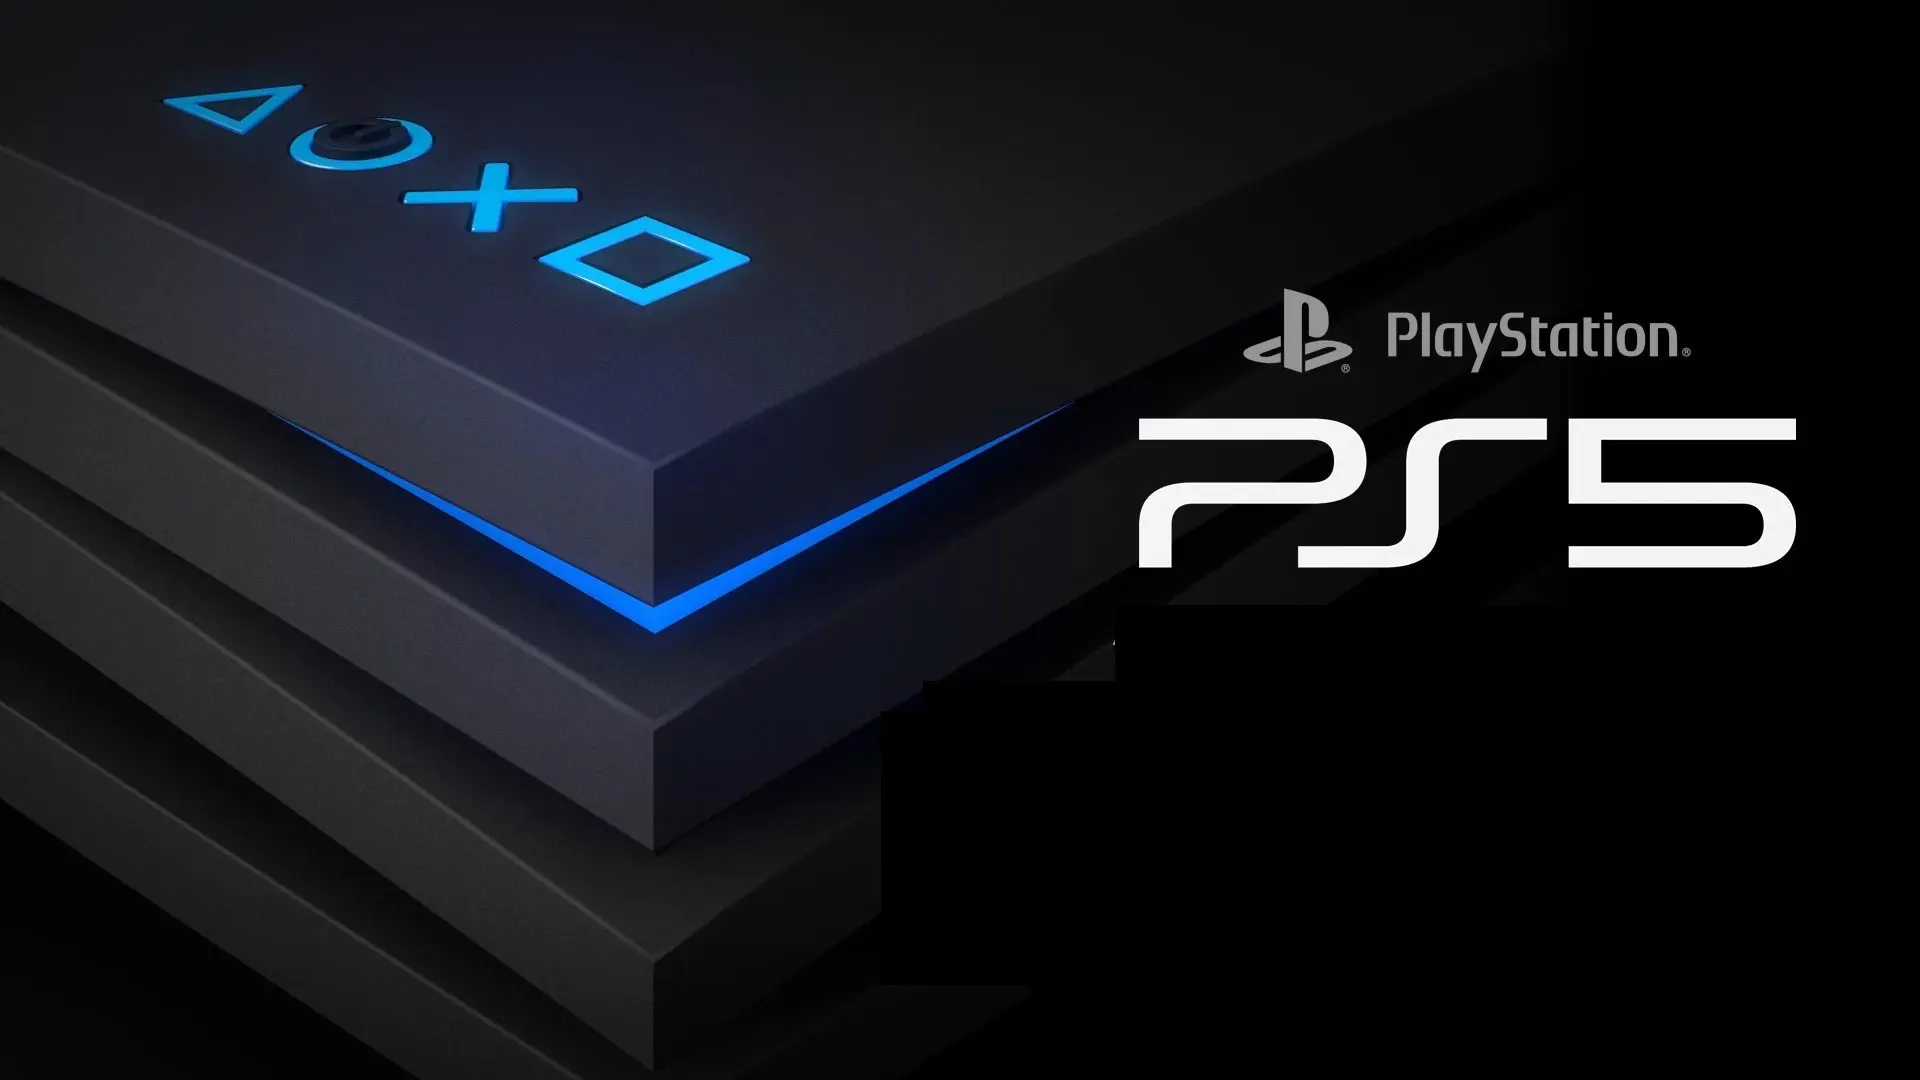 Patente para o PlayStation 5 sugere compartilhamento de saves entre jogadores